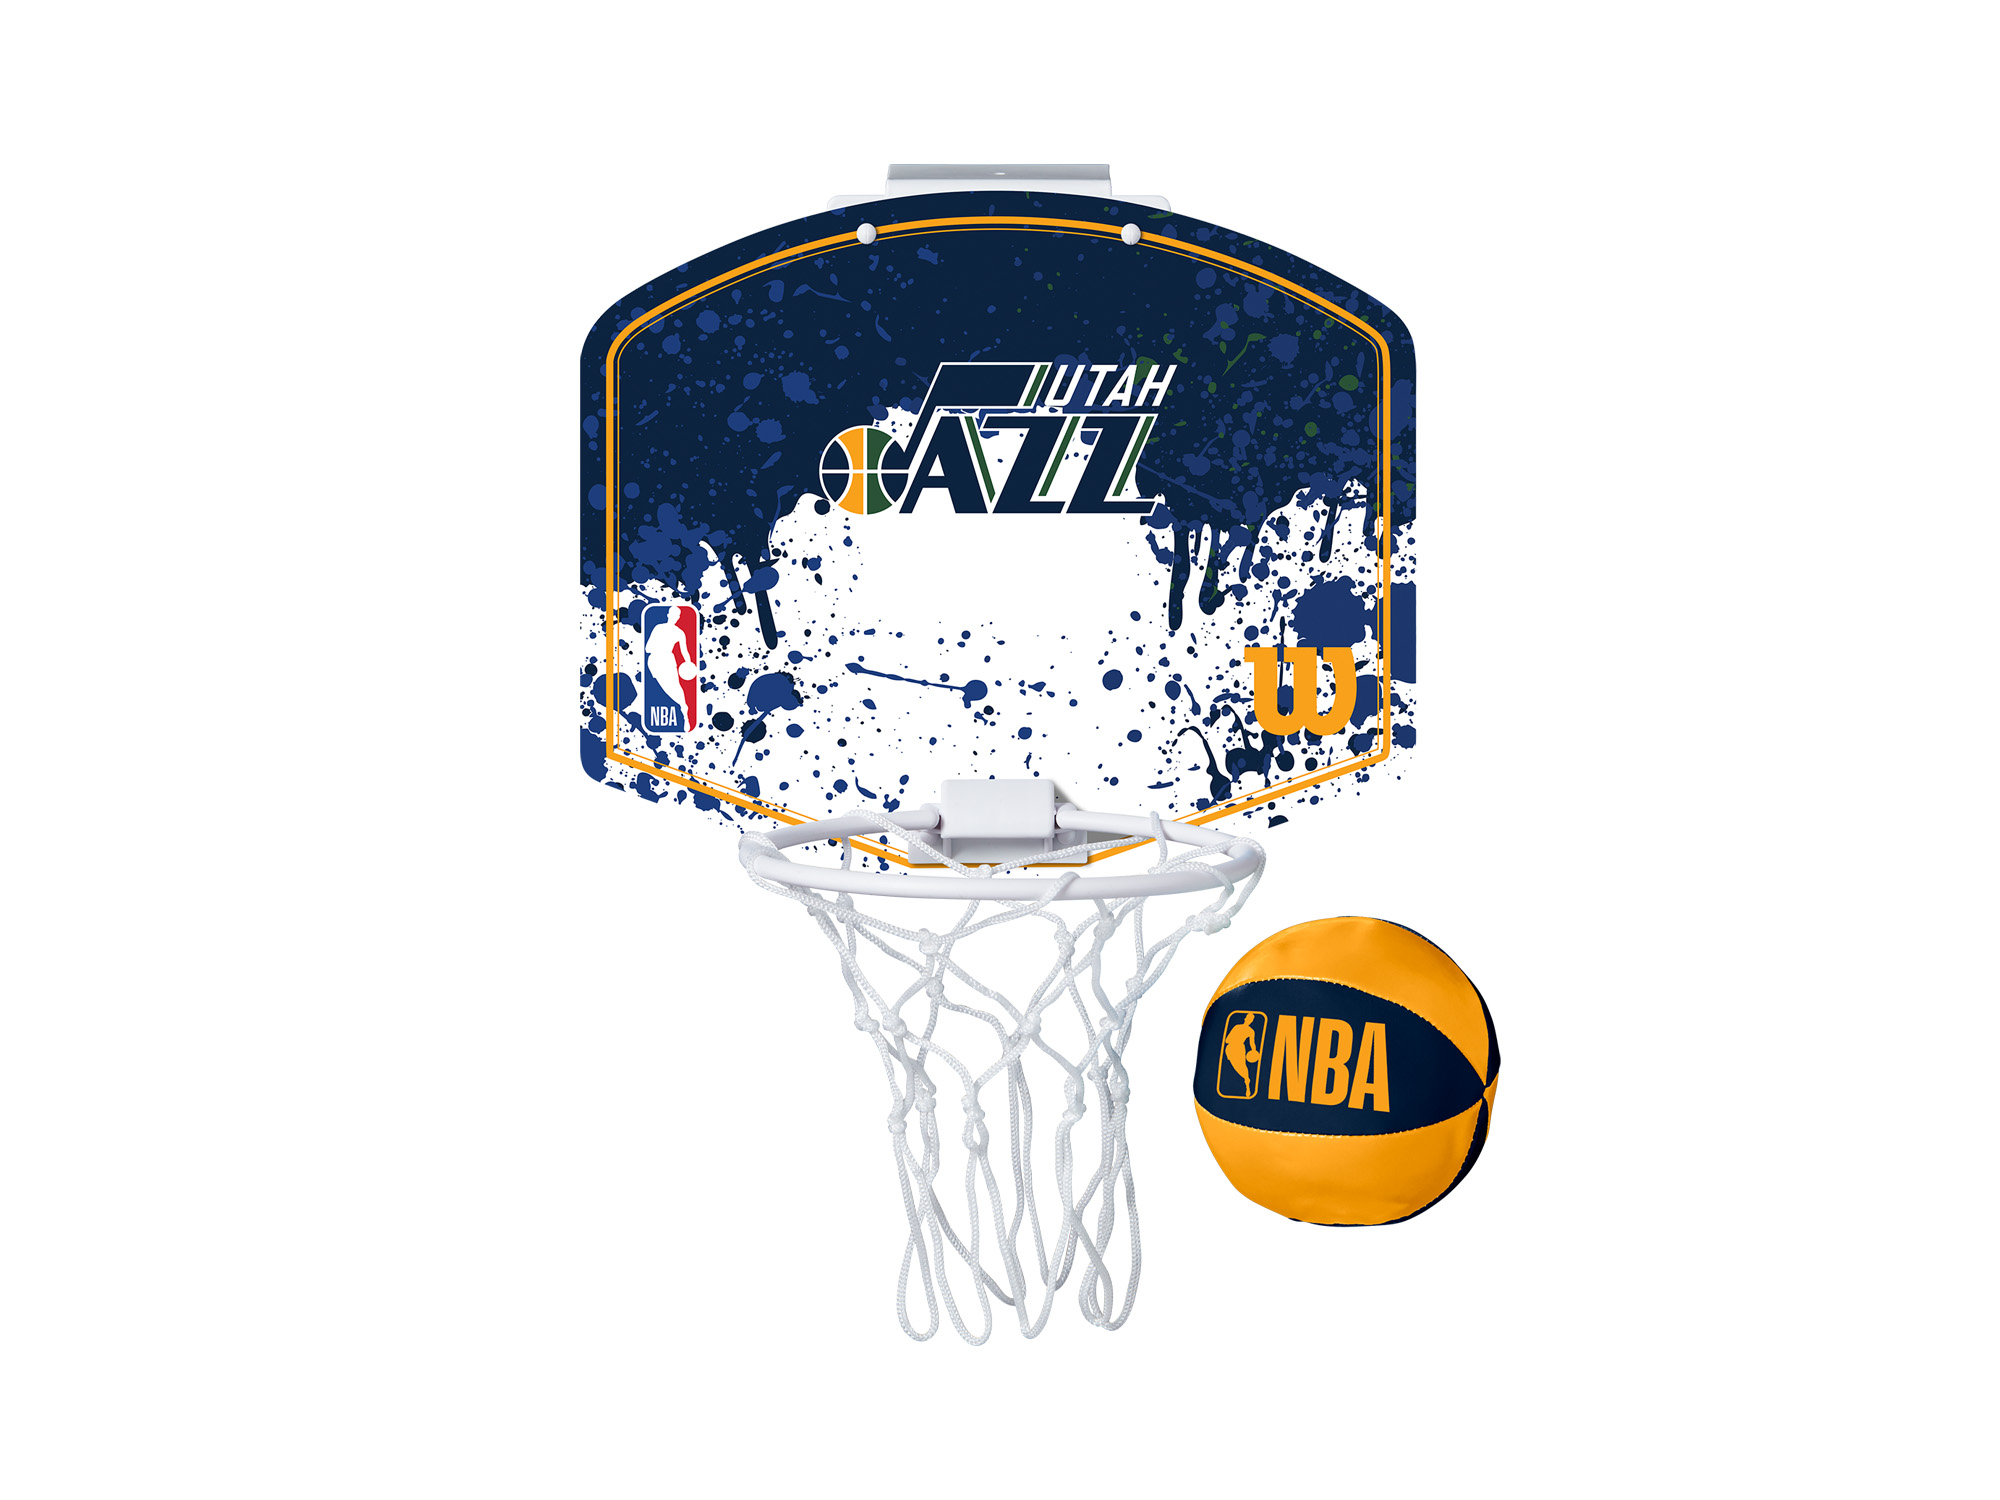 Wilson Utah Jazz NBA Team Mini Hoop